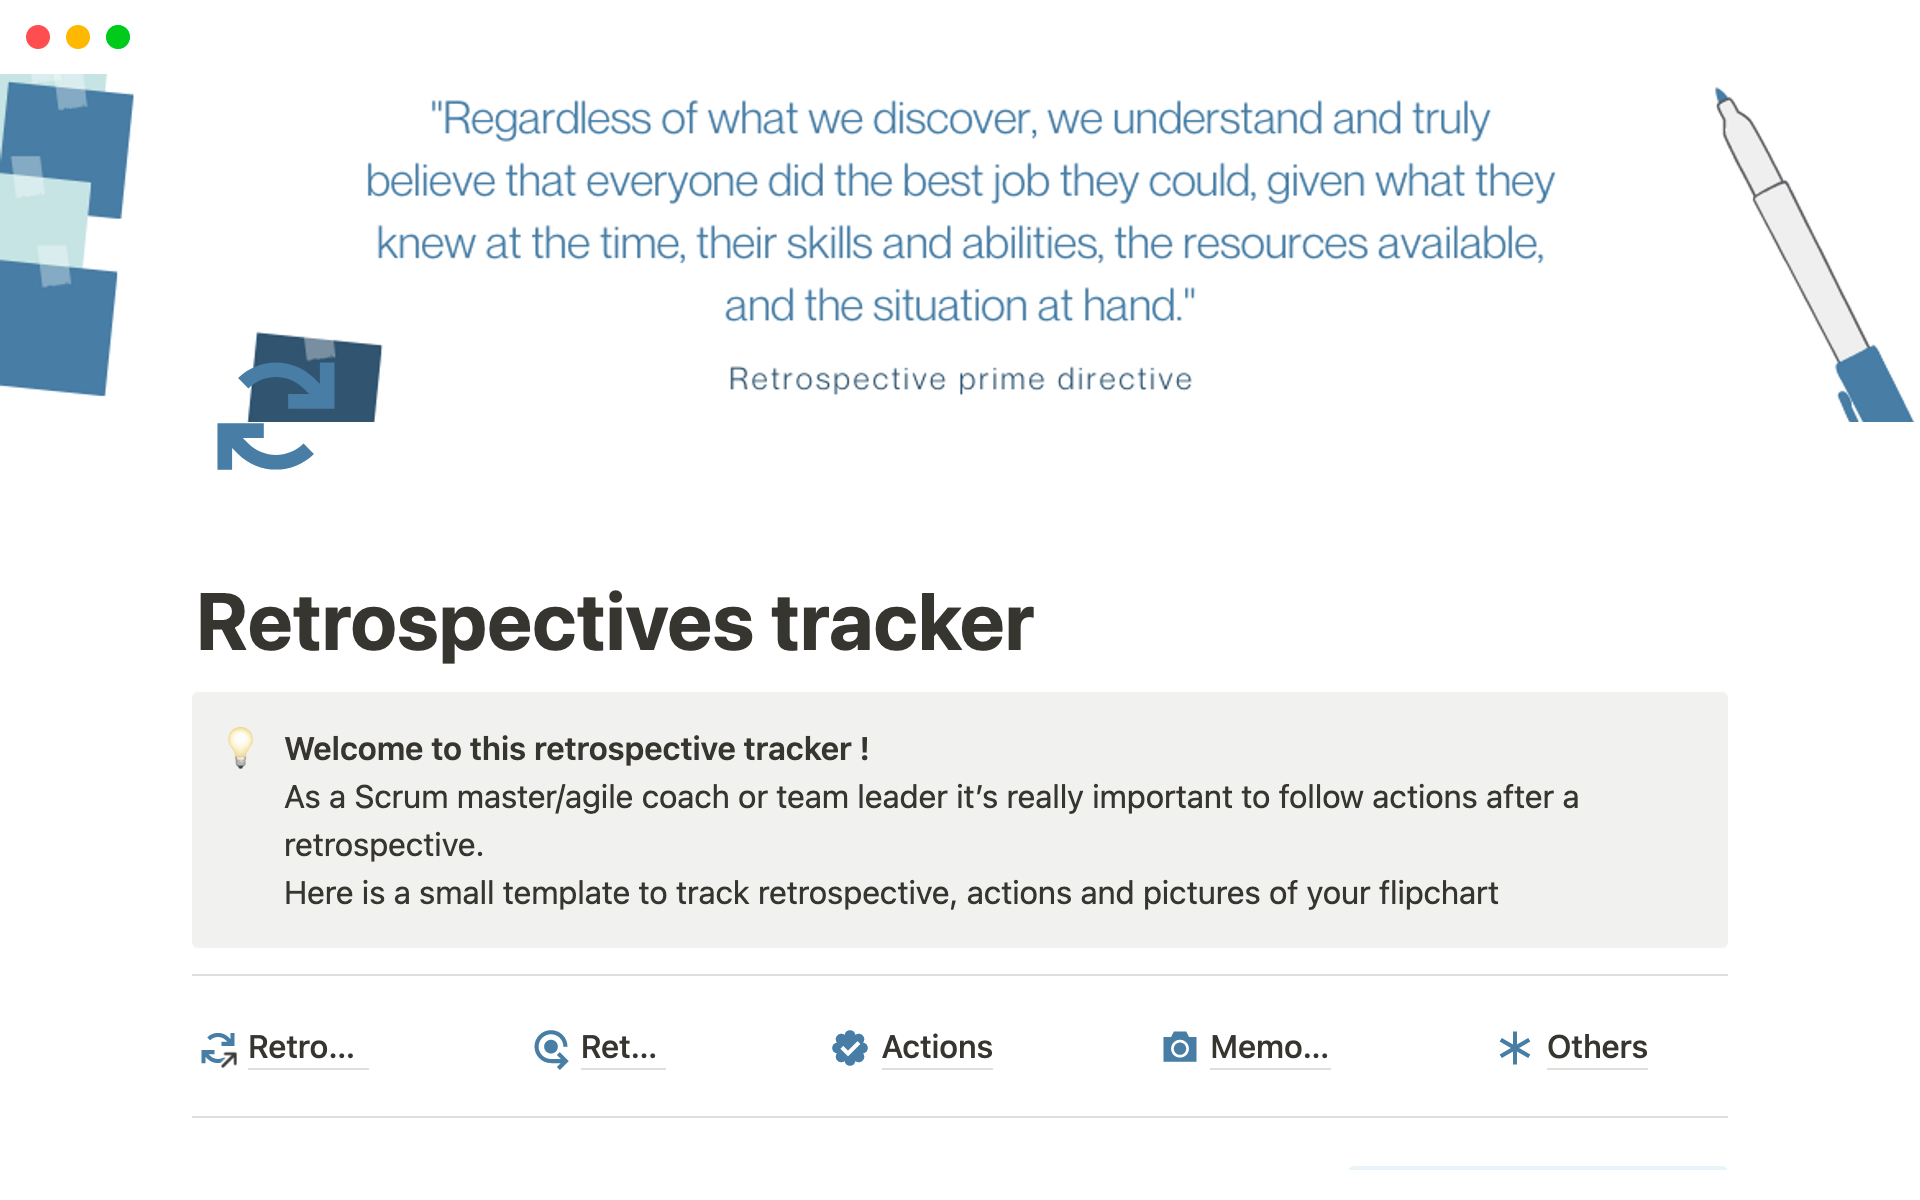 Uma prévia do modelo para Retrospective tracker